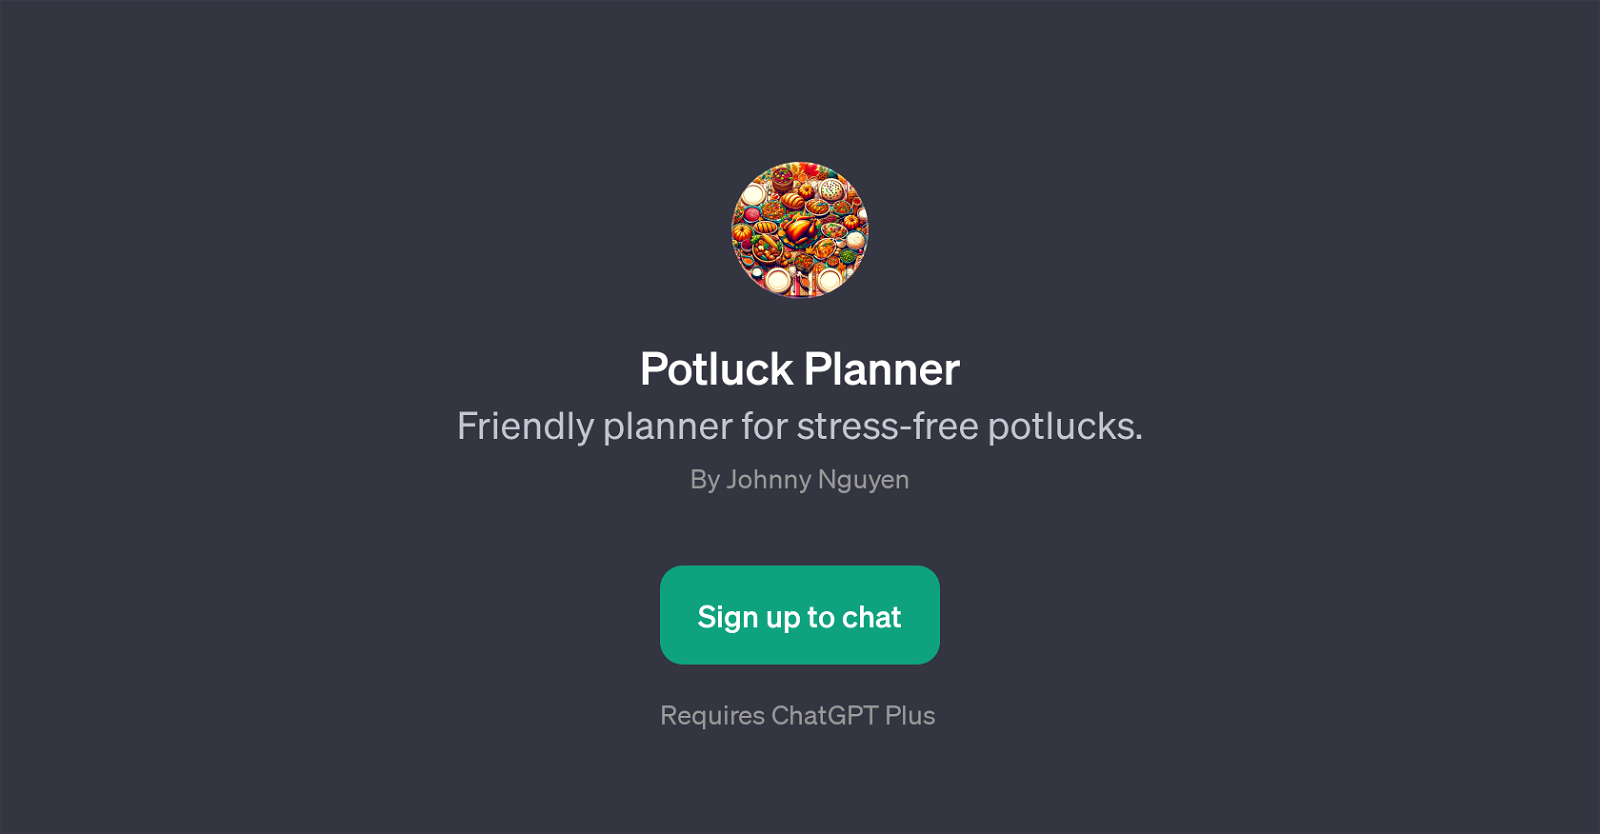 Potluck Planner website